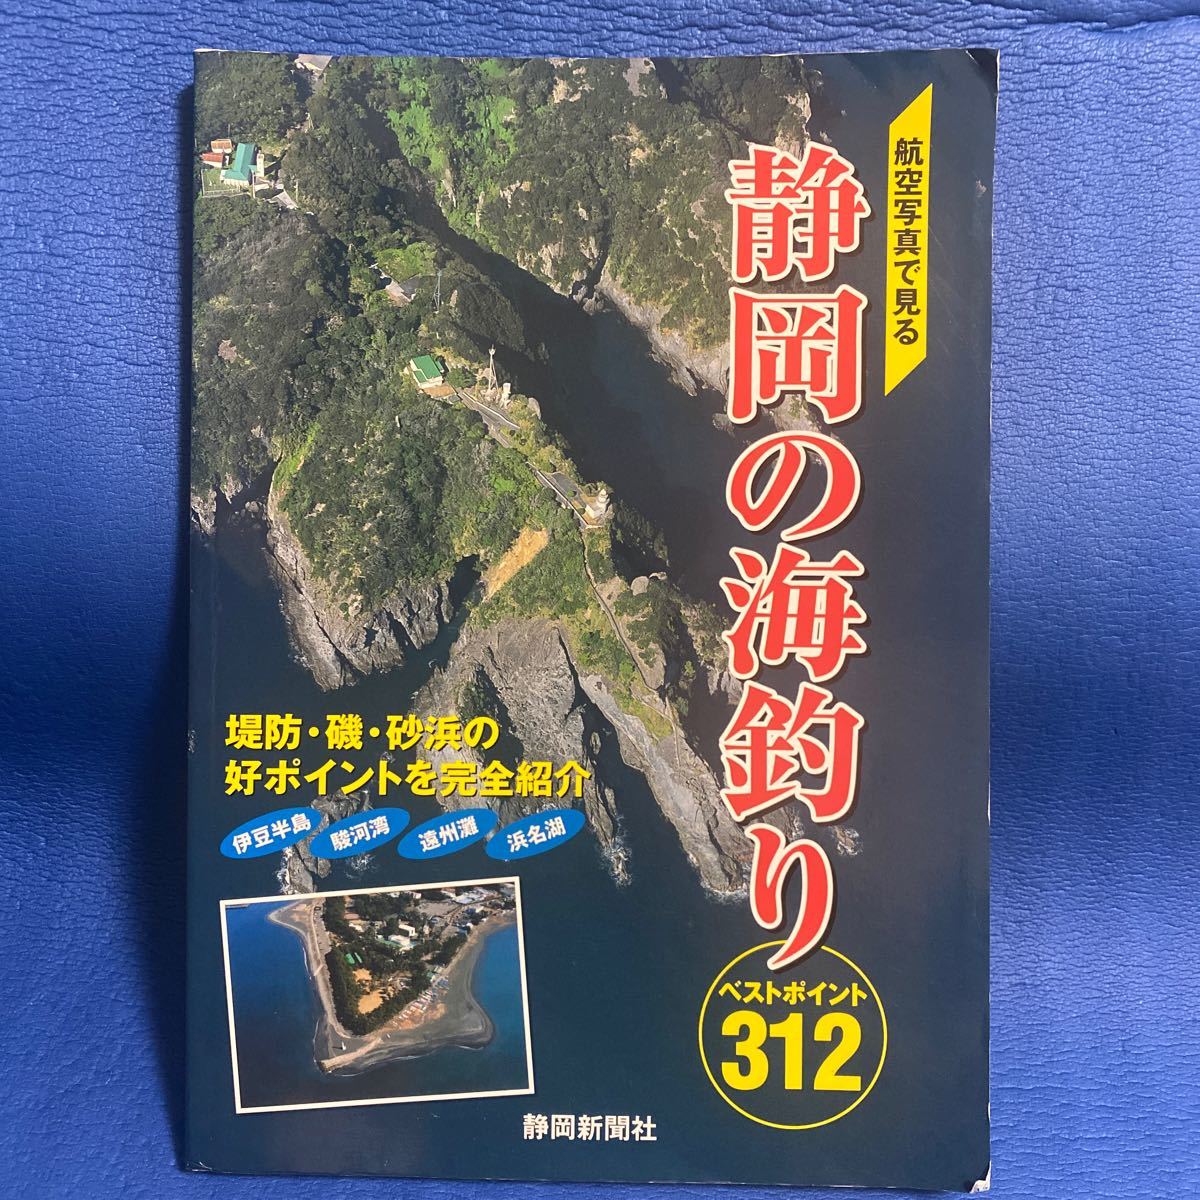 YT-0043 航空写真で見る 静岡の海釣り ベストポイント312 静岡新聞社 空撮 航空写真 海釣り 沖釣り_画像1